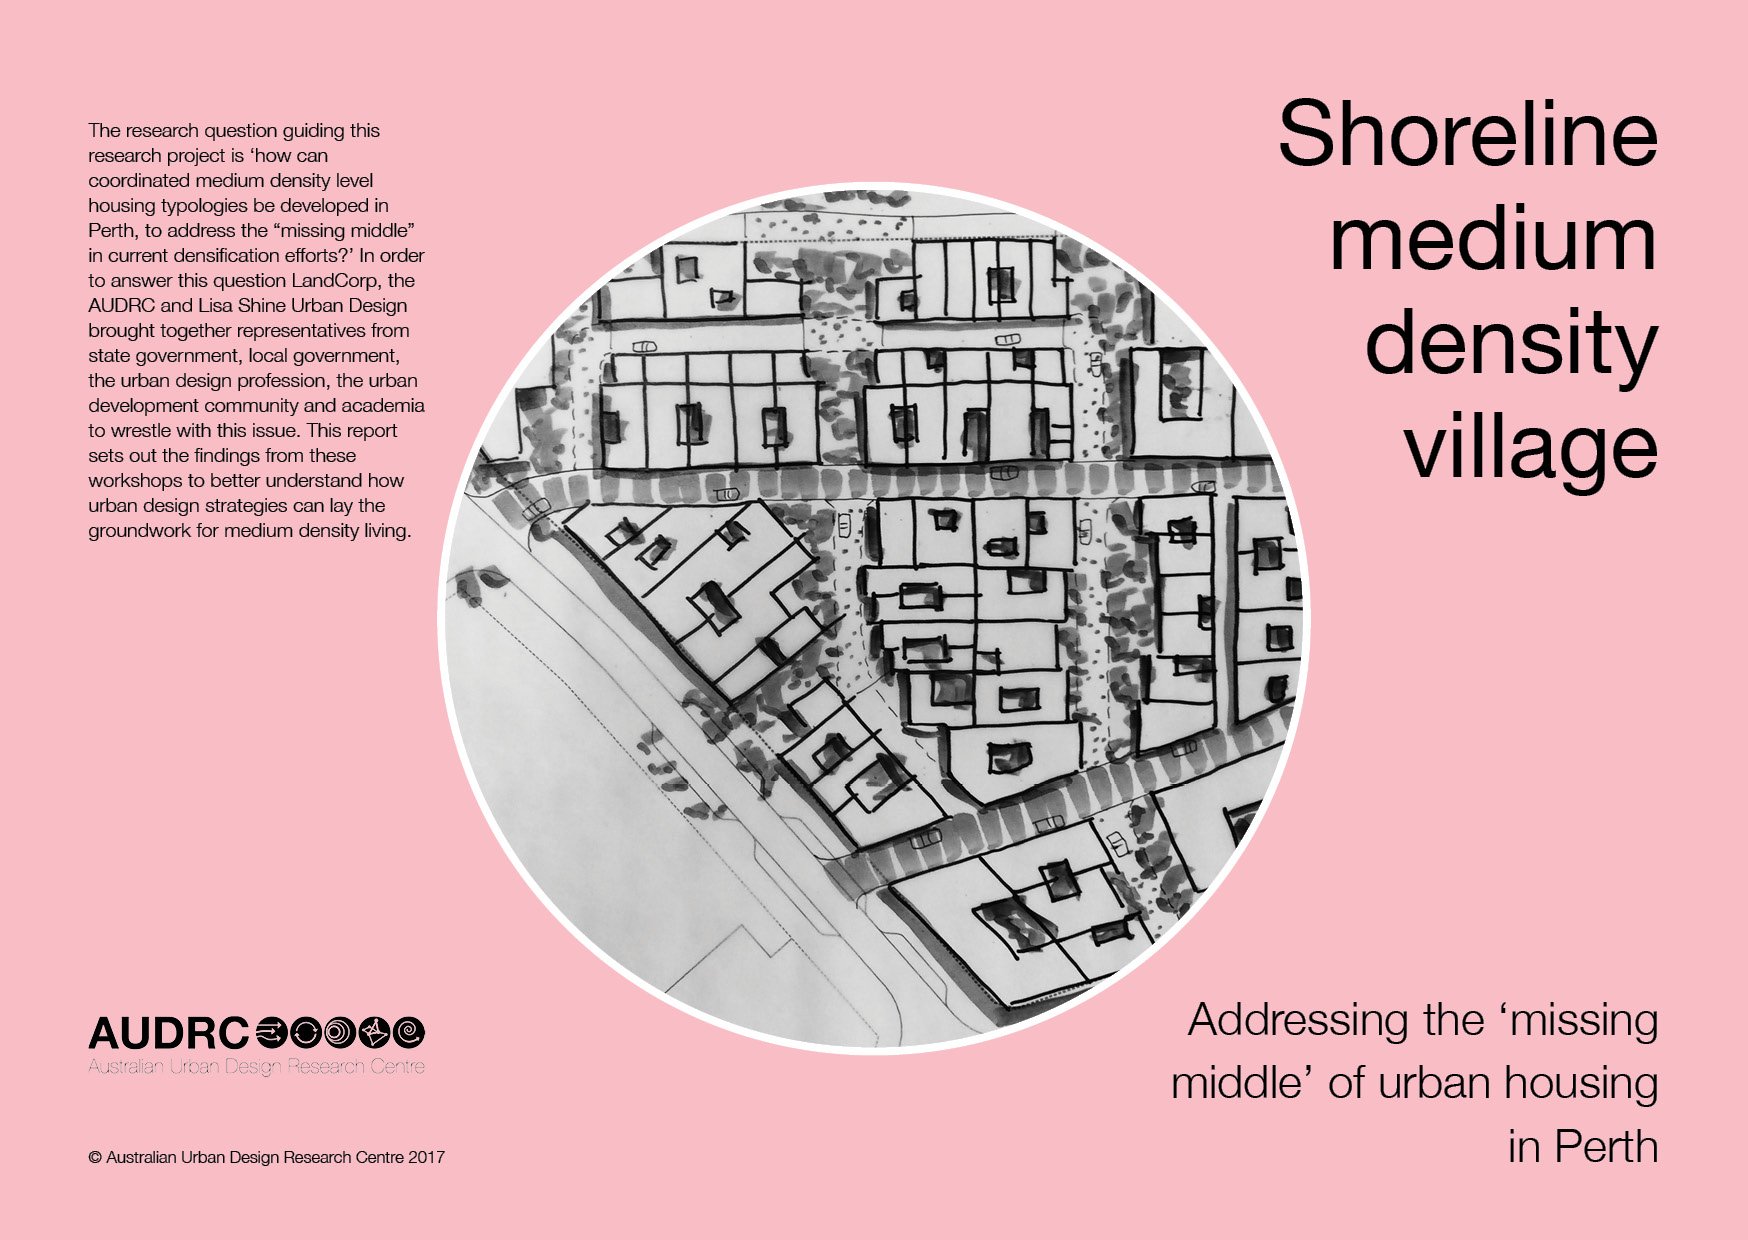 Shoreline medium density village